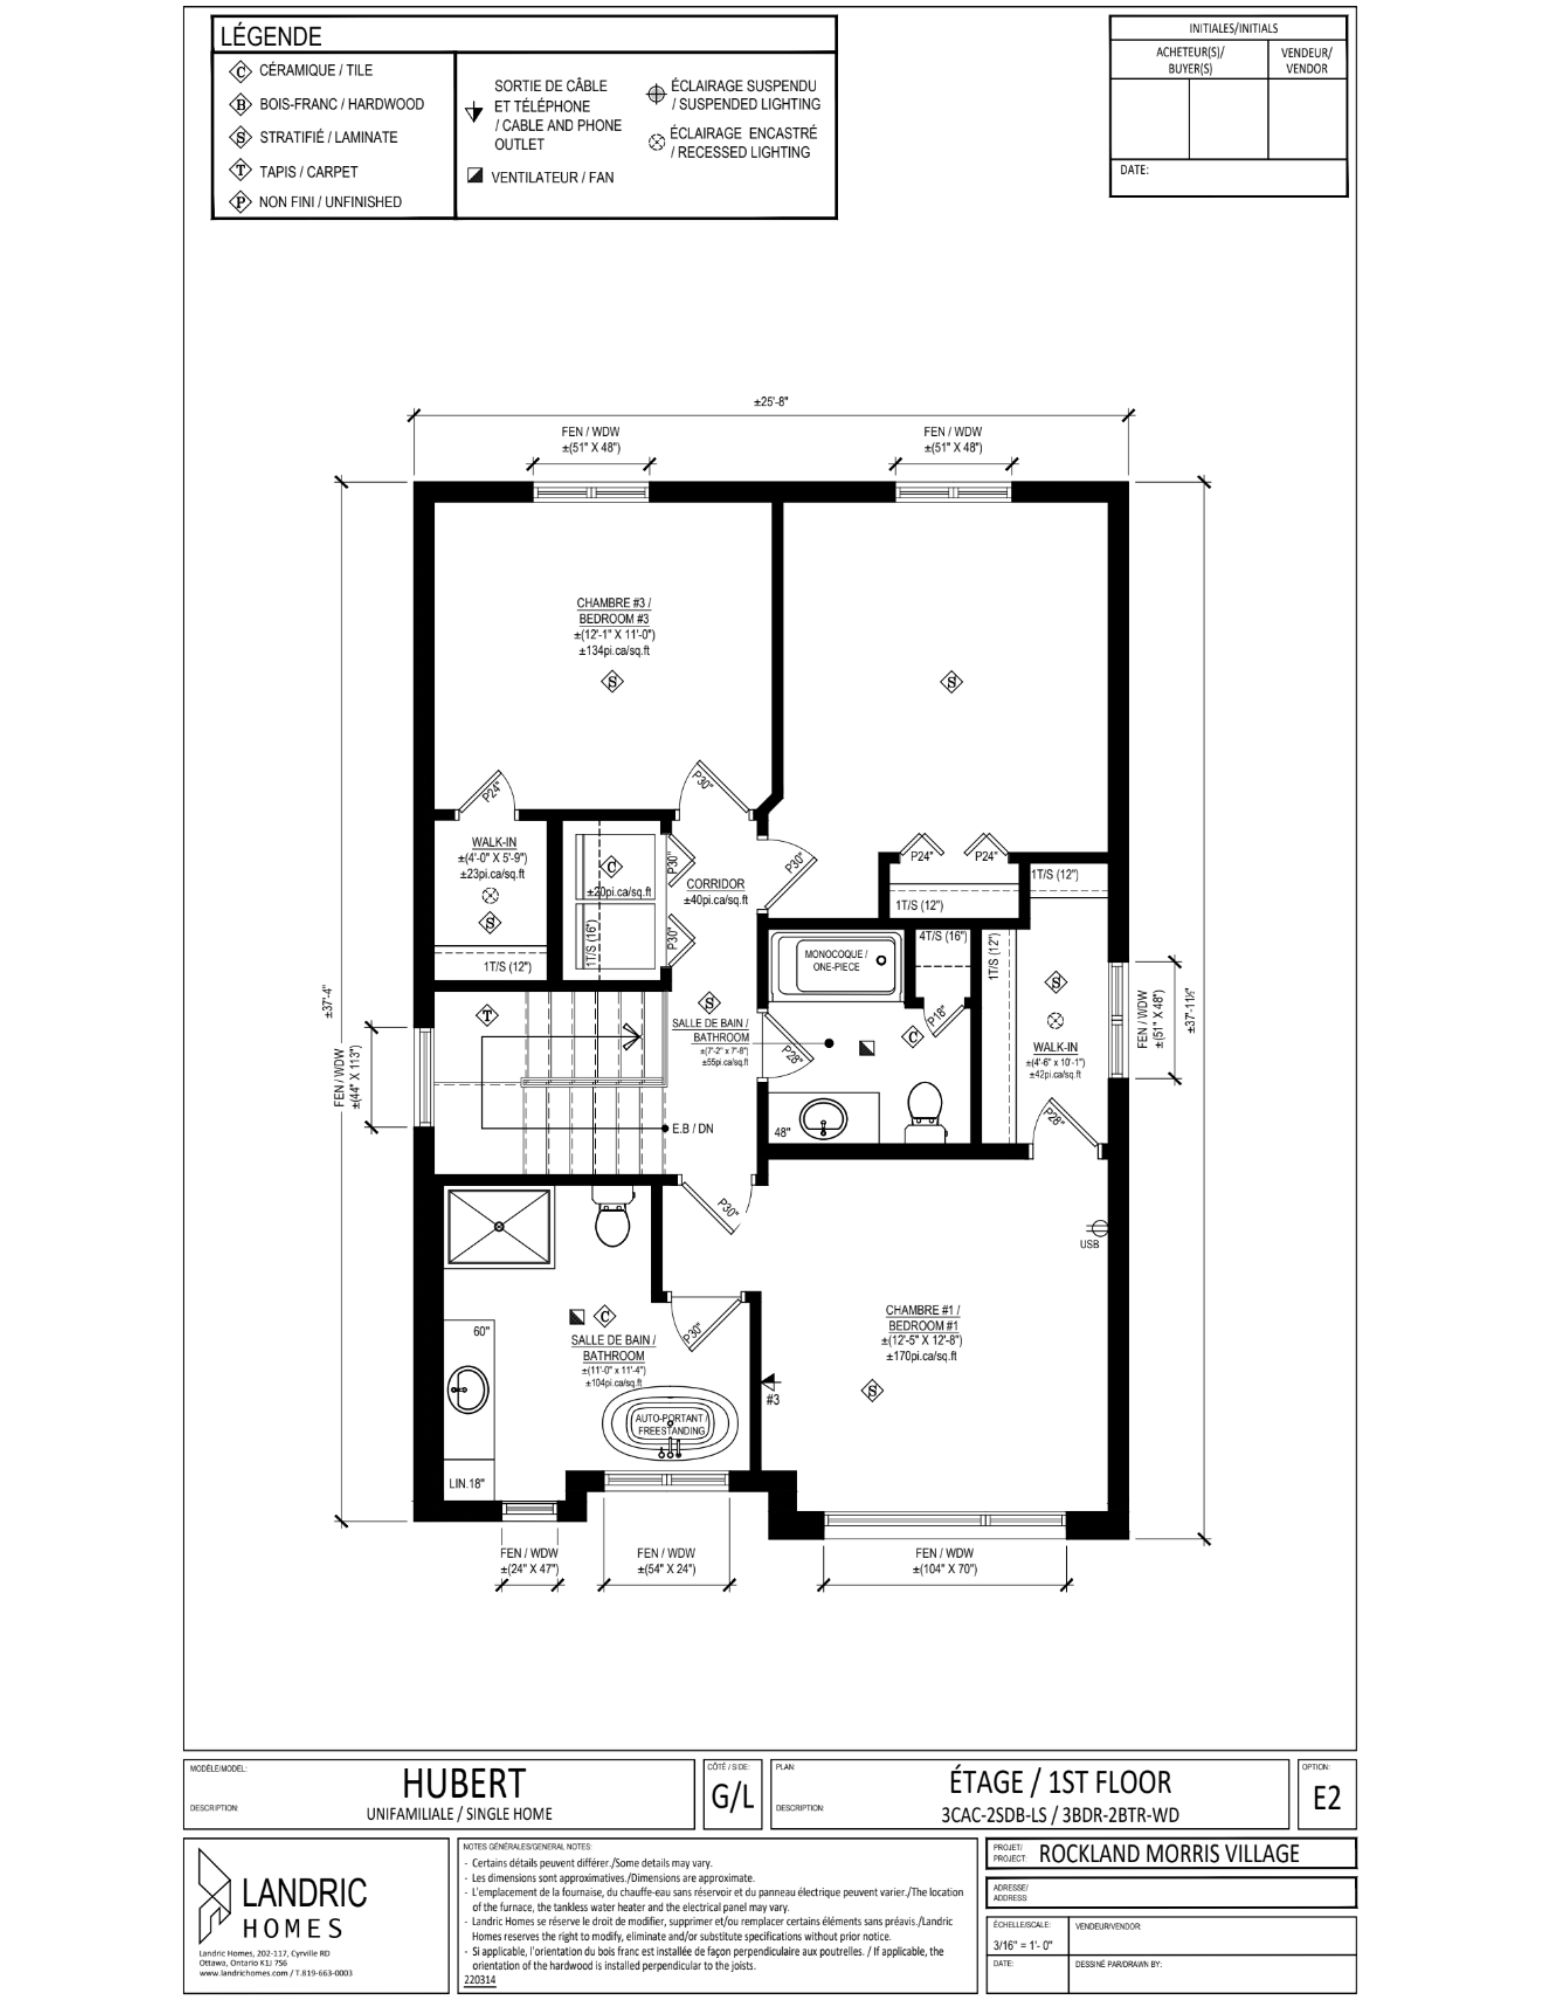 Beaumont, Morris Village floor plans (5)